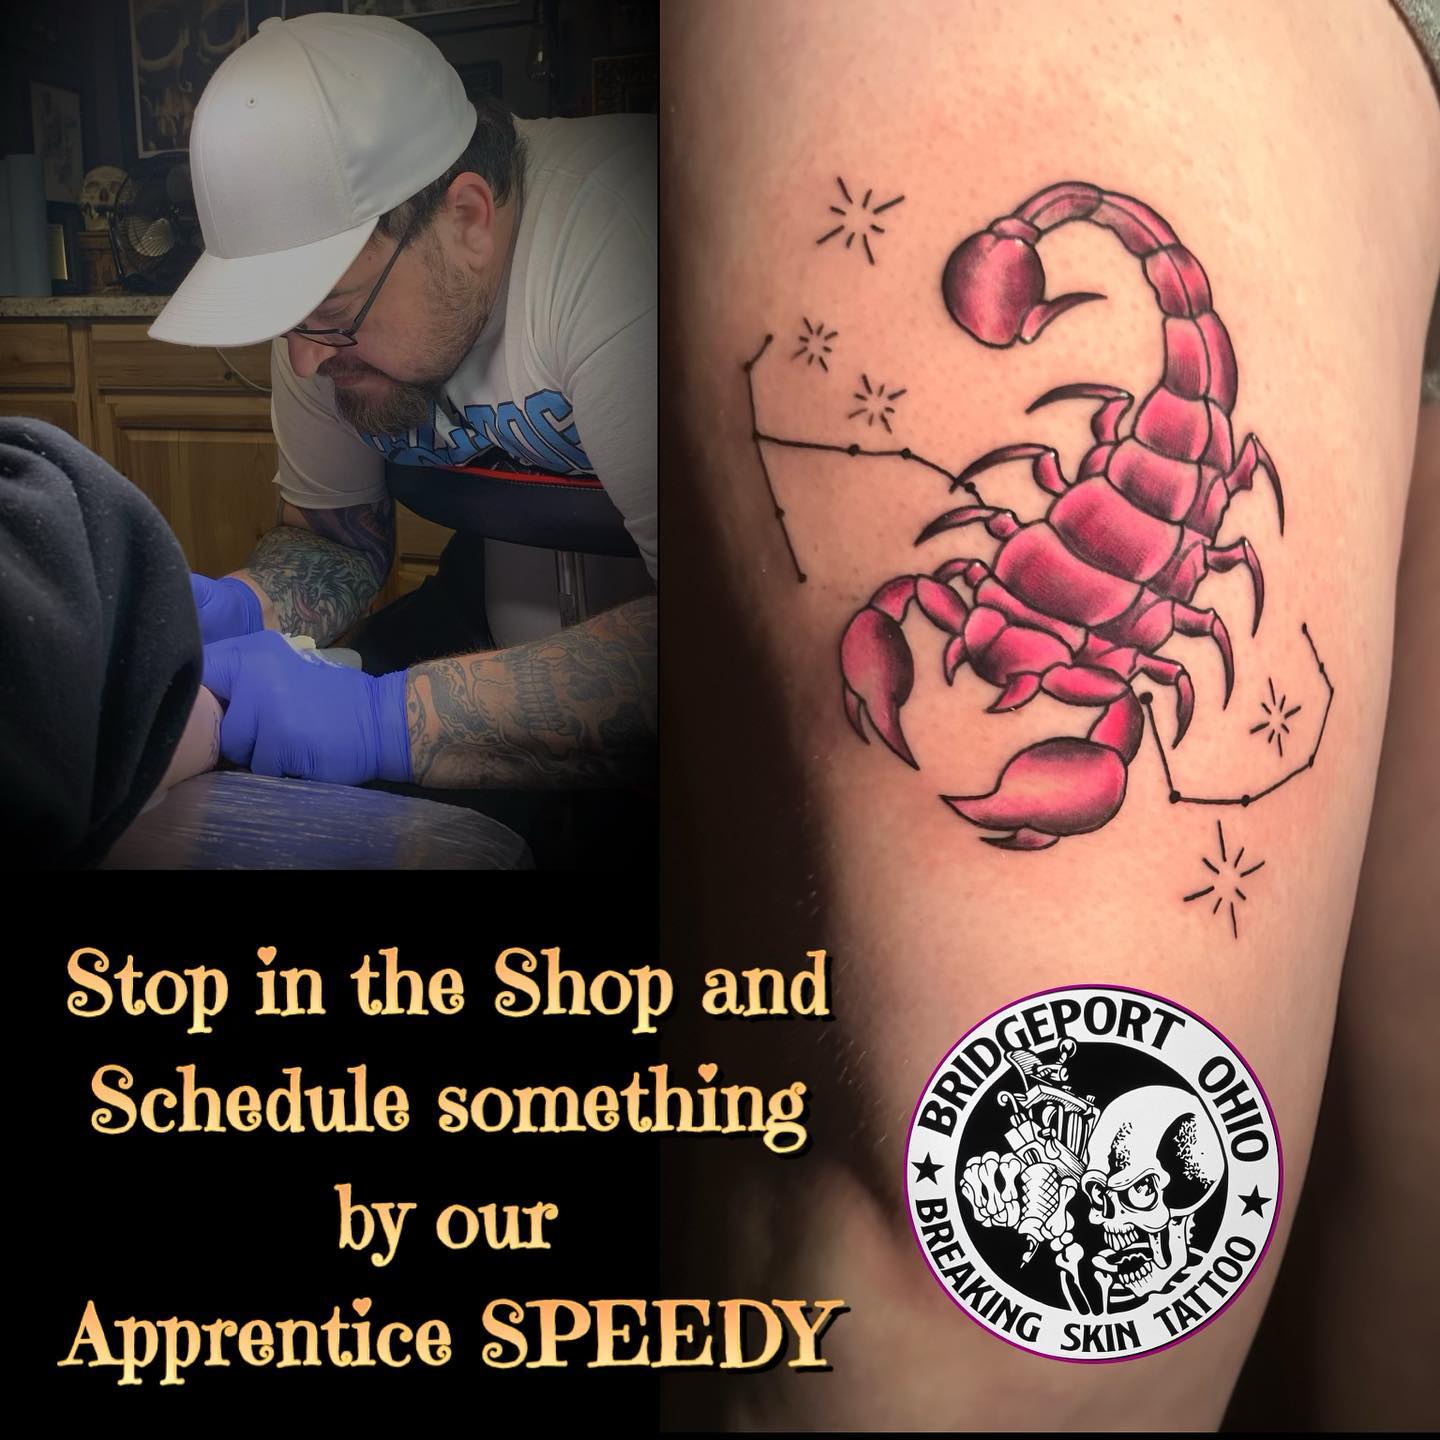 Breaking skin tattoo and body piercing 680 Main St, Bridgeport Ohio 43912